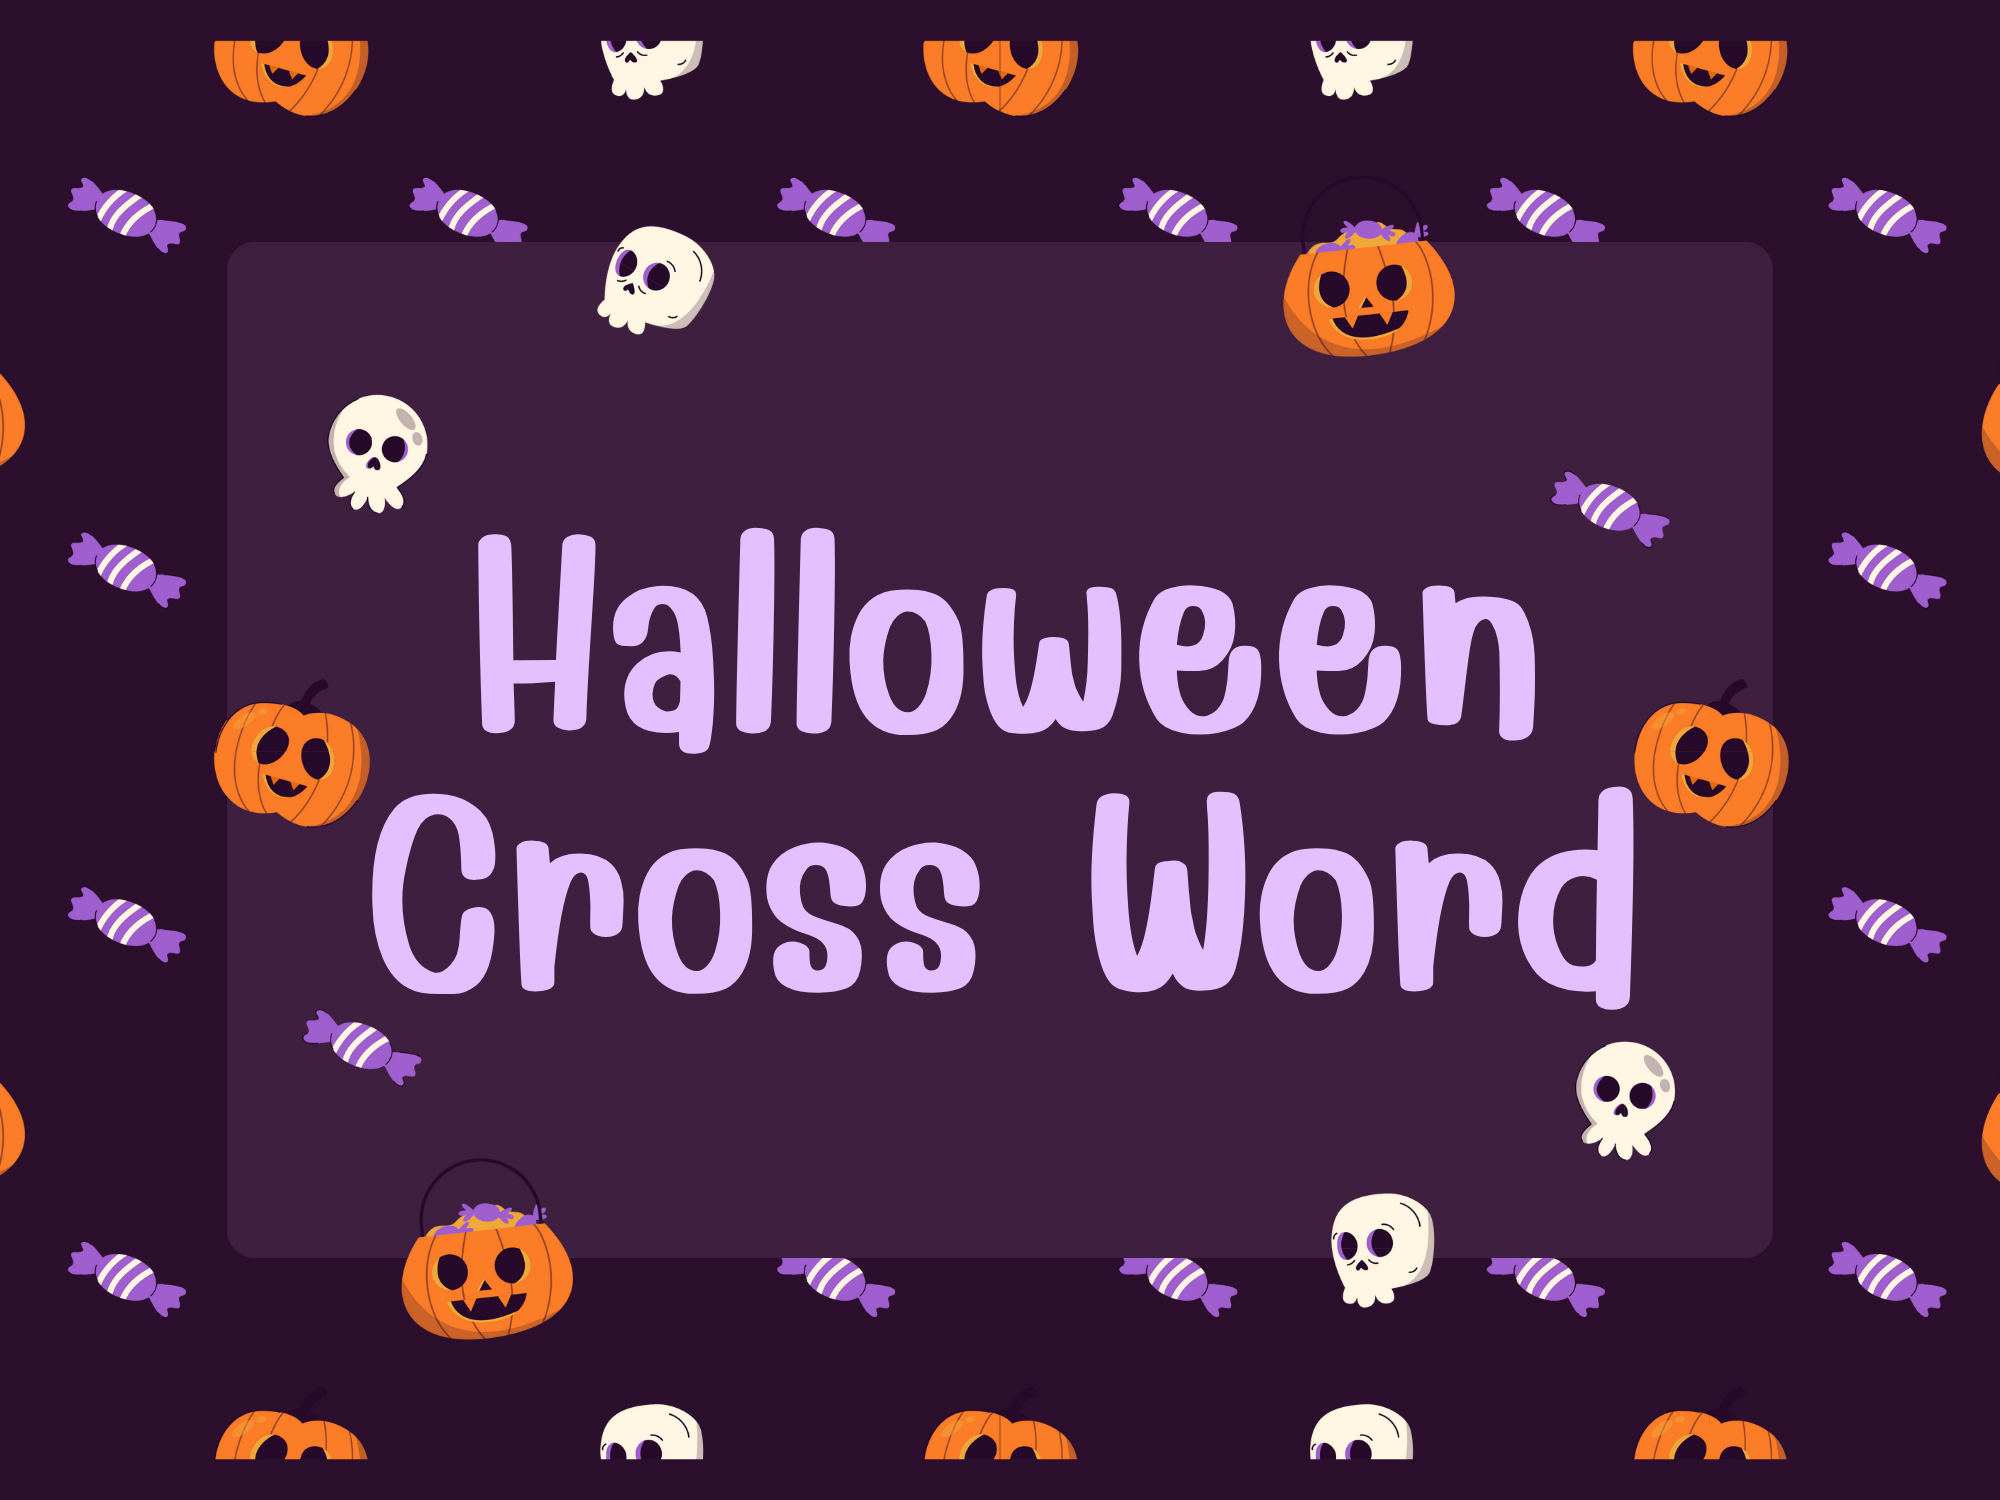 Halloween Crossword Feature image